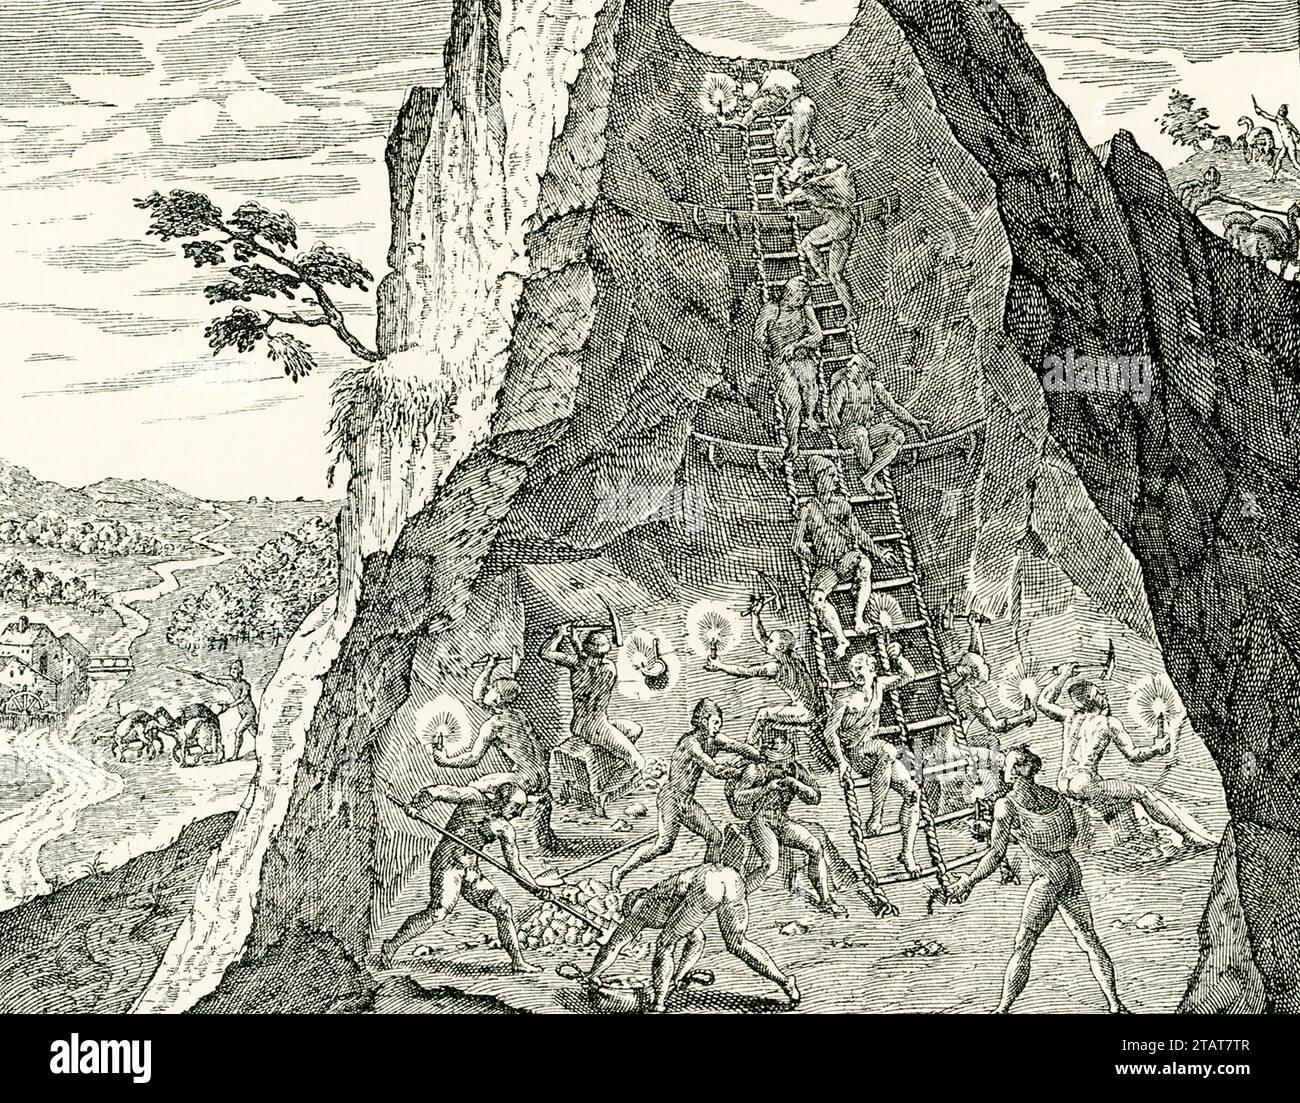 Cette illustration, tirée de 'Americae partess' (Parts/Areas of America) publiée à Francfort, en Allemagne, en 1590 montre des Amérindiens travaillant dans les mines d'or. Banque D'Images